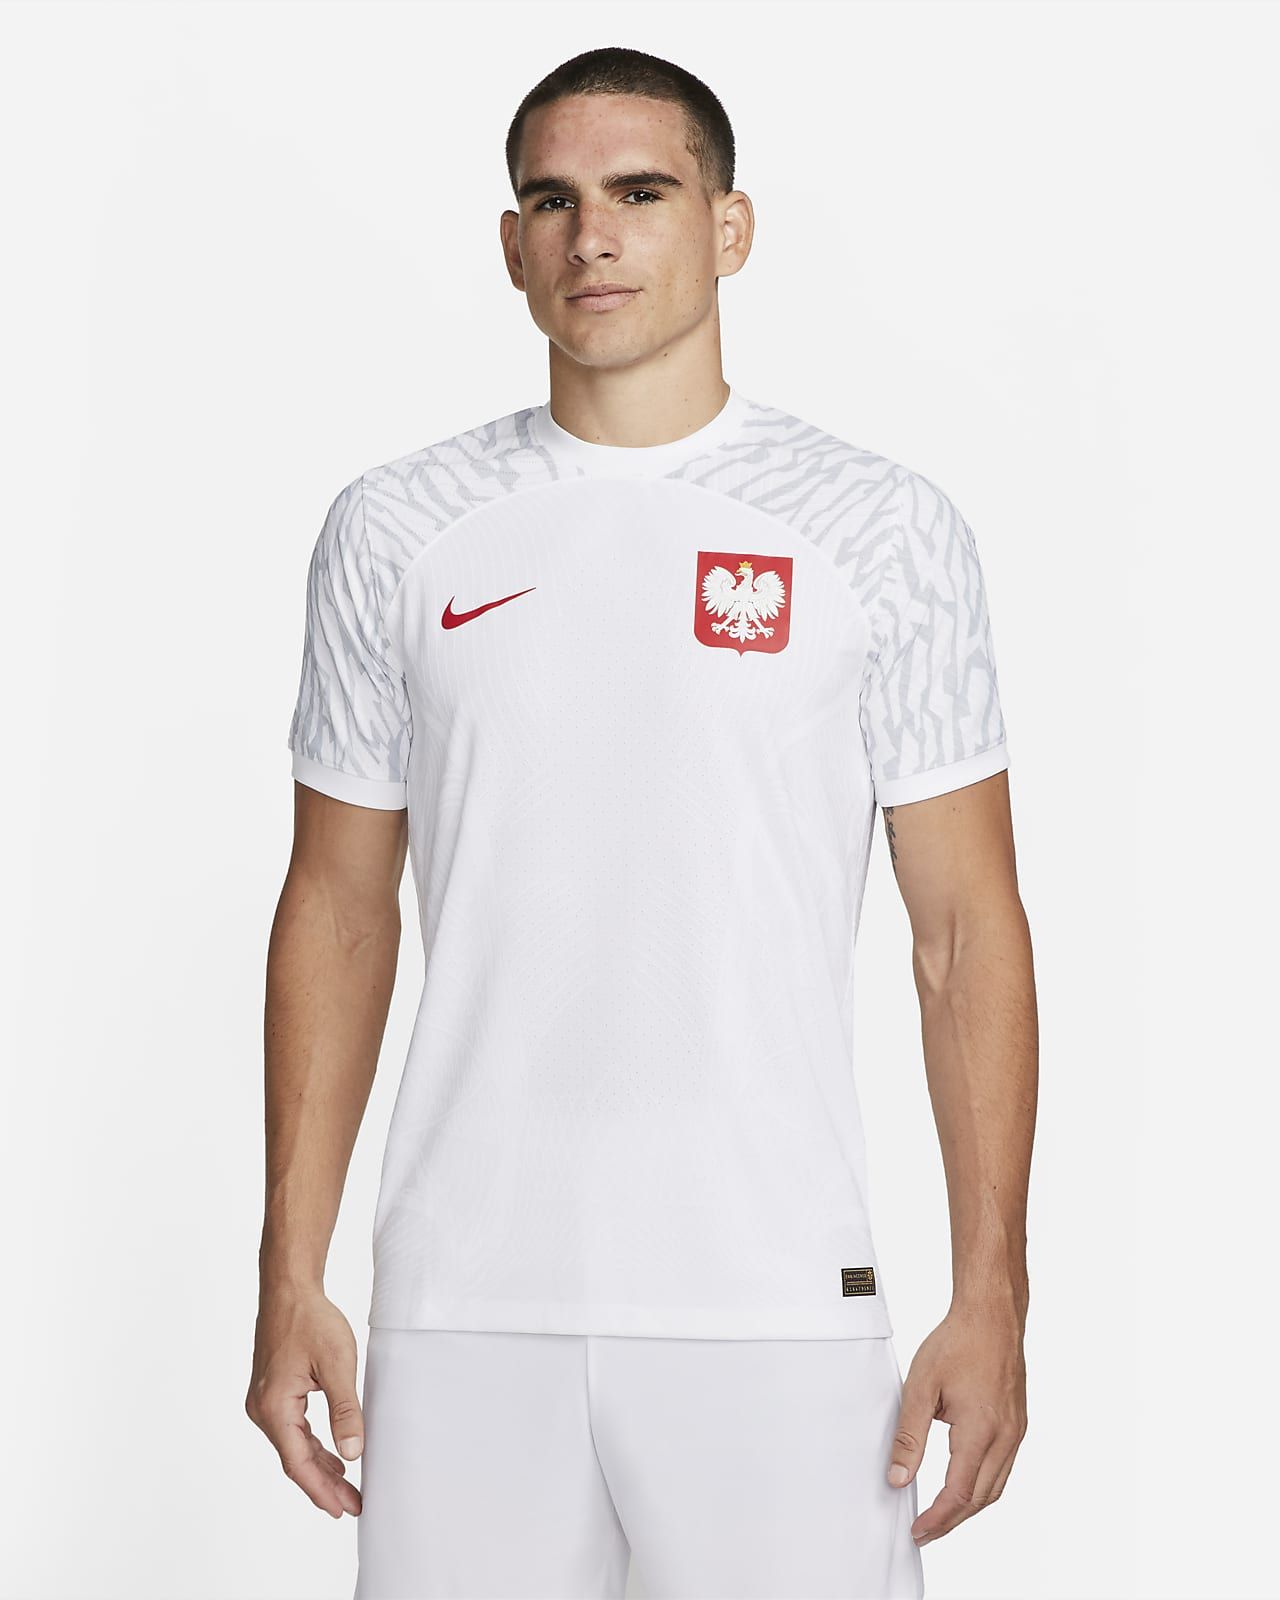 Nike Польша. Найк Польша. Nike poland